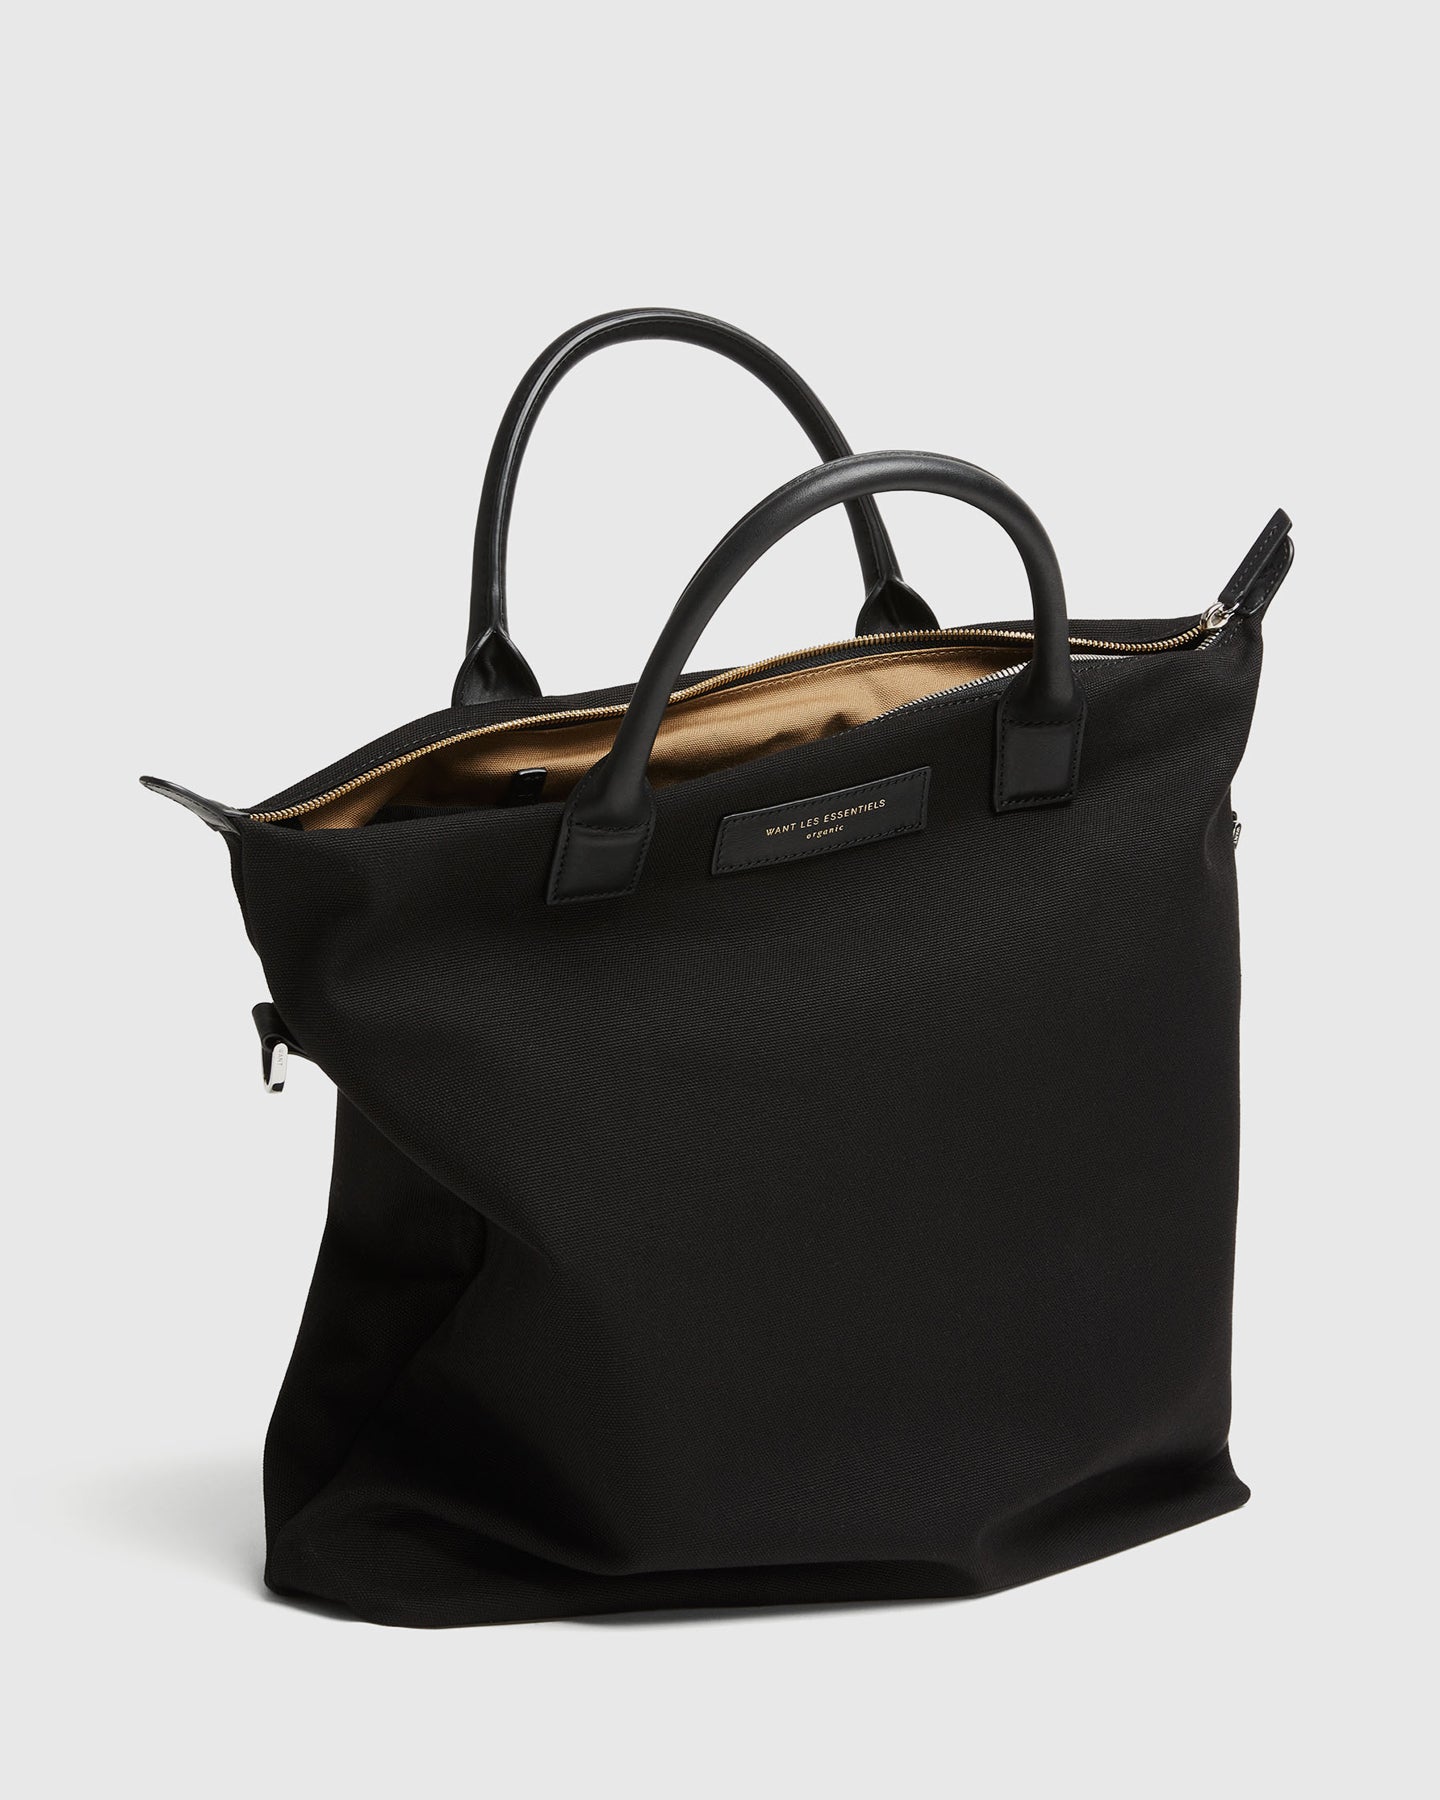 Minimalist Design Bags | Shop Luxury Bags Online | WANT Les Essentiels